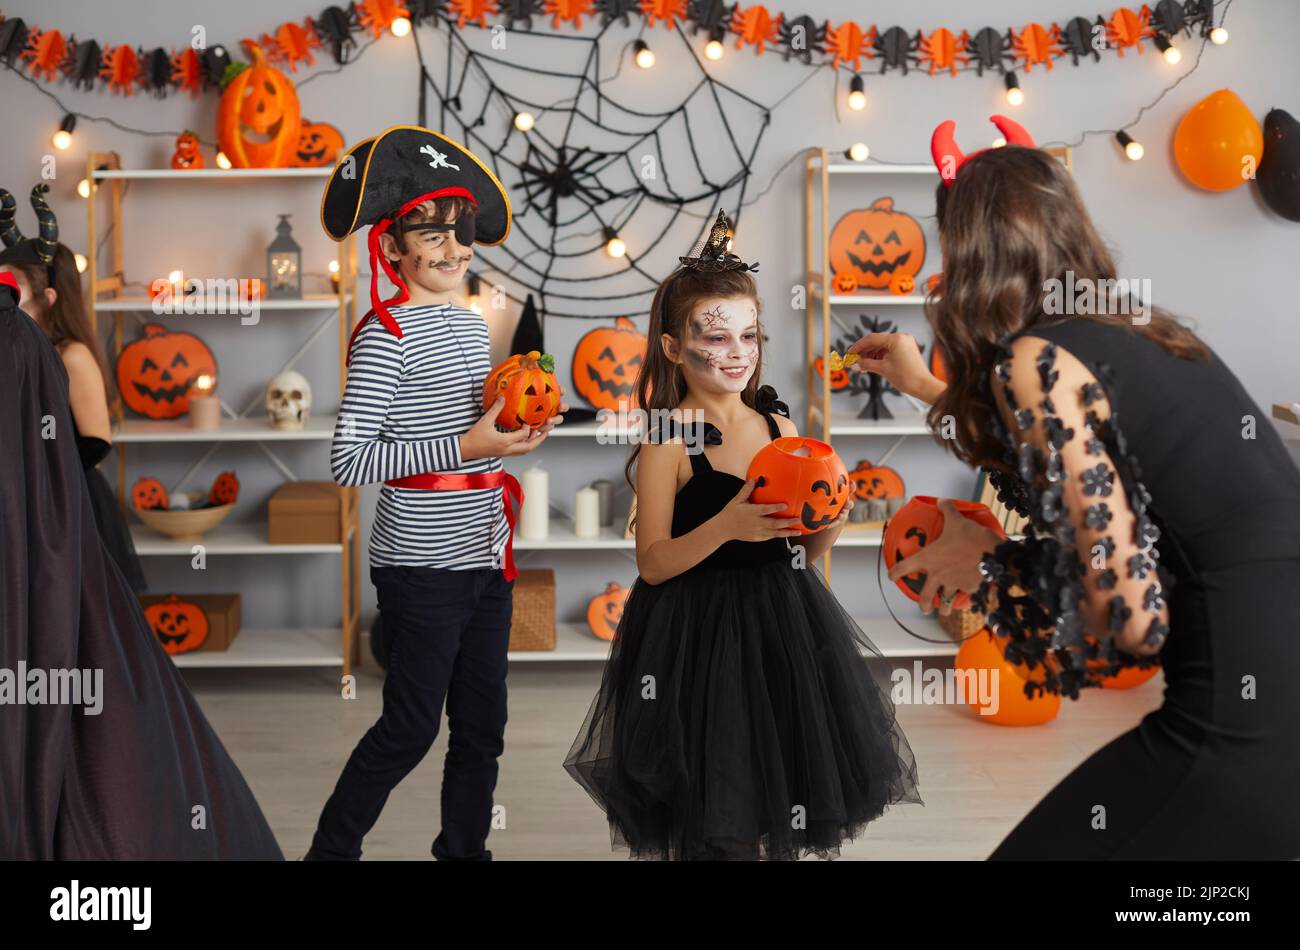 Une femme à la fête d'Halloween remet des bonbons aux enfants qui sont vêtus de costumes de déguisement effrayants. Banque D'Images